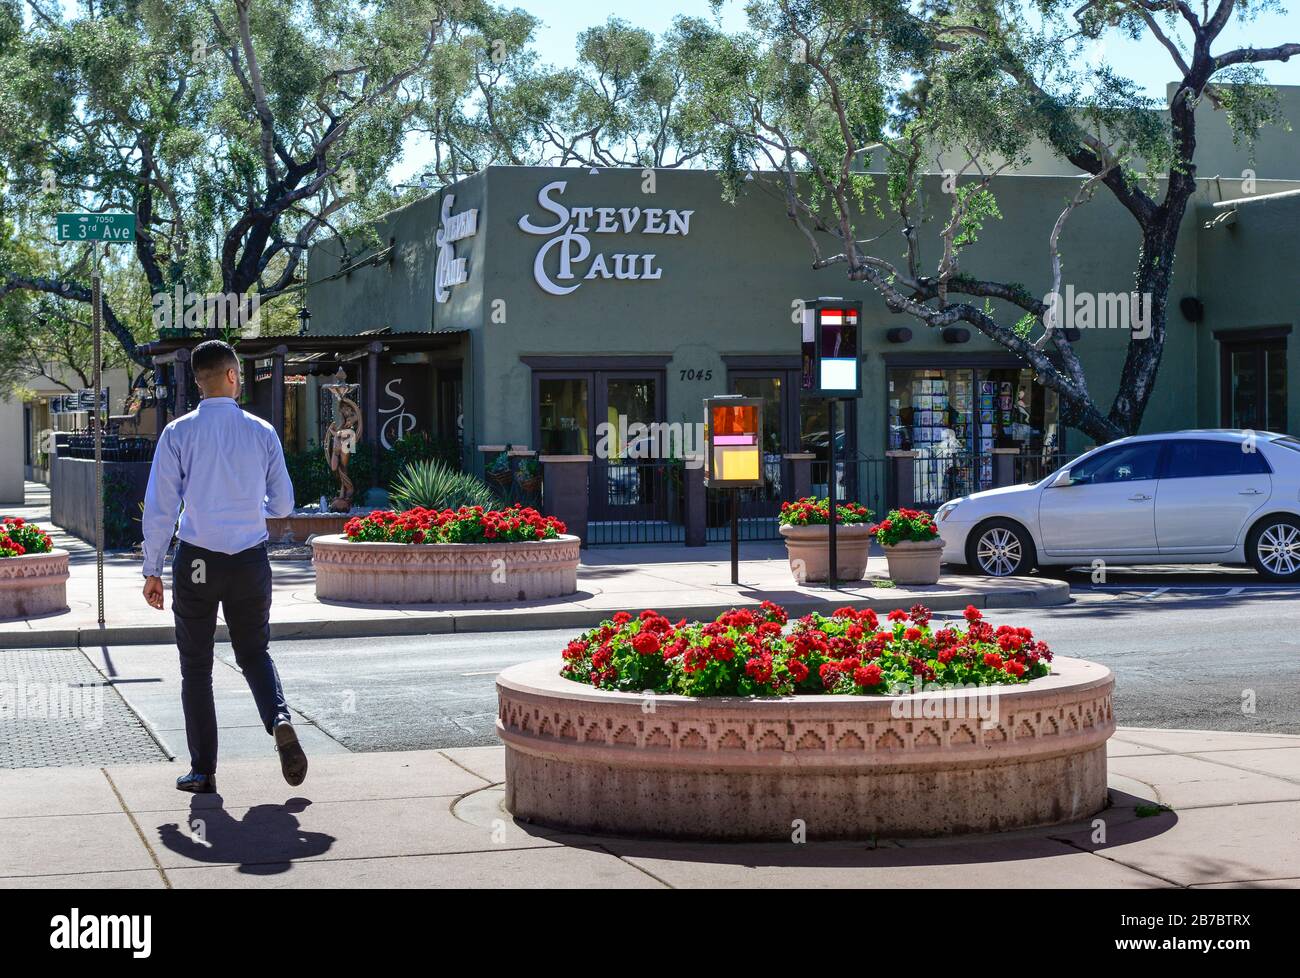 Un hombre se acerca a un cruce de peatones junto a plantadores de begonias rojas frente al edificio Steven Paul Hair Salon en el hermoso Old Town Scottsdale, AZ Foto de stock